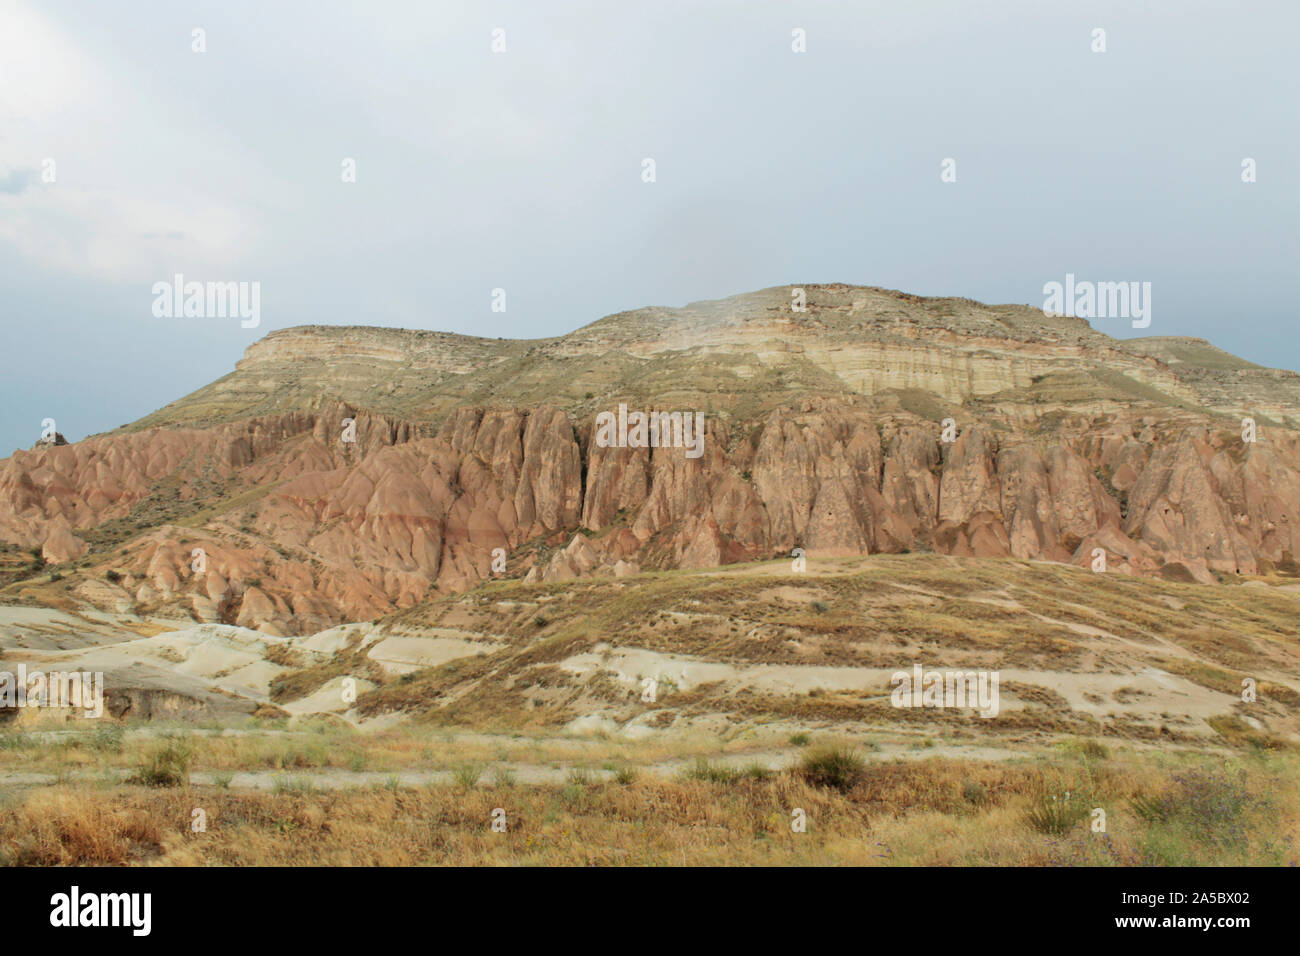 Énorme montagne en destination touristique populaire - Cappadoce, Turquie. Paysage paisible. Des couleurs claires Banque D'Images